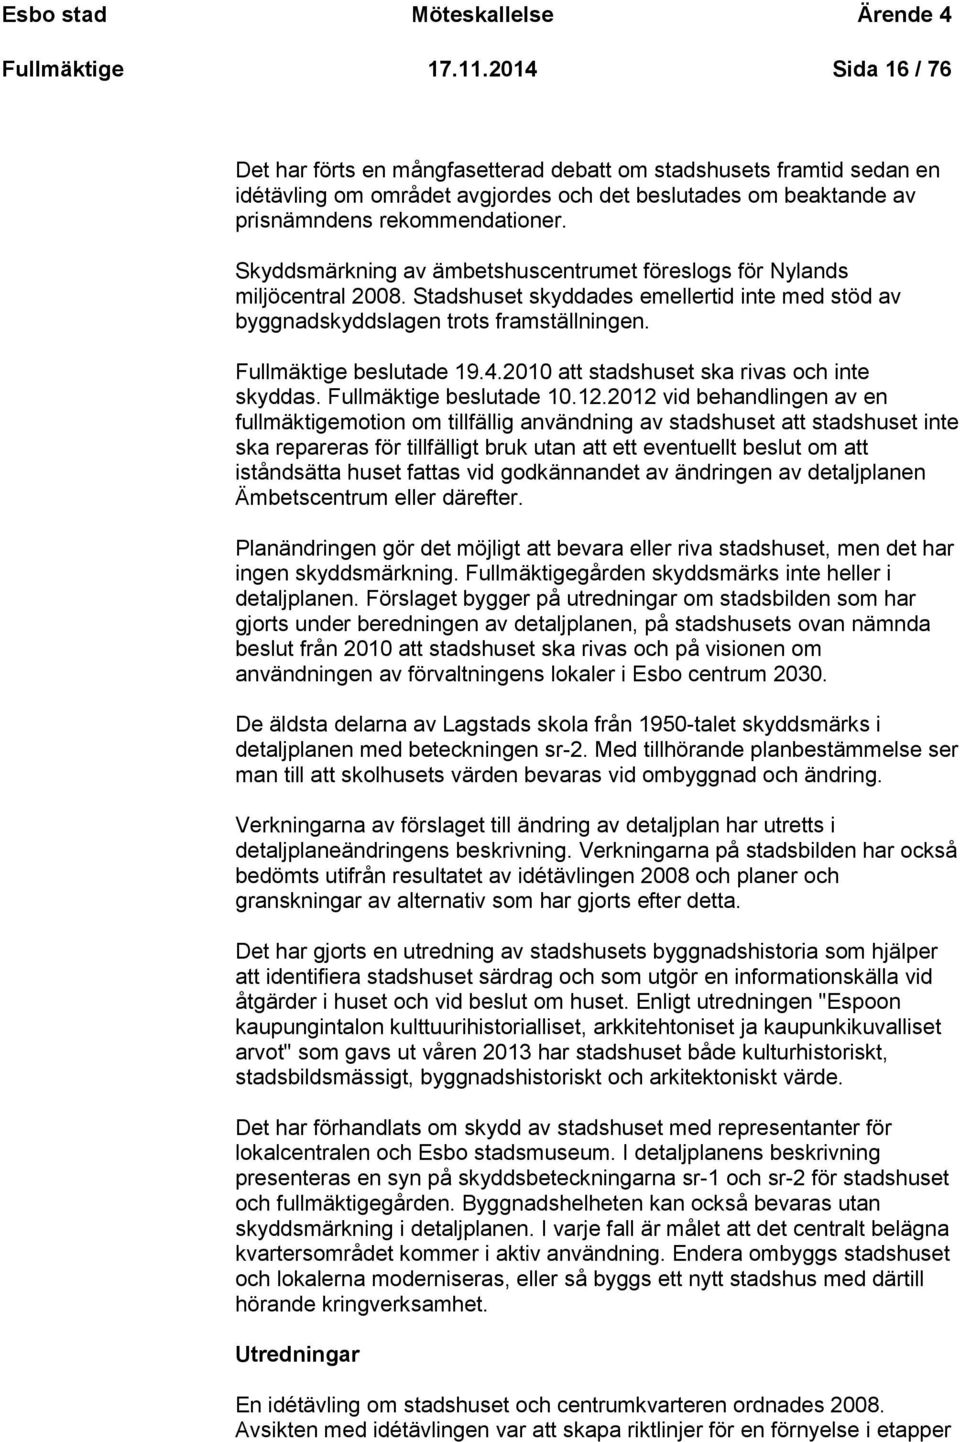 Skyddsmärkning av ämbetshuscentrumet föreslogs för Nylands miljöcentral 2008. Stadshuset skyddades emellertid inte med stöd av byggnadskyddslagen trots framställningen. Fullmäktige beslutade 19.4.